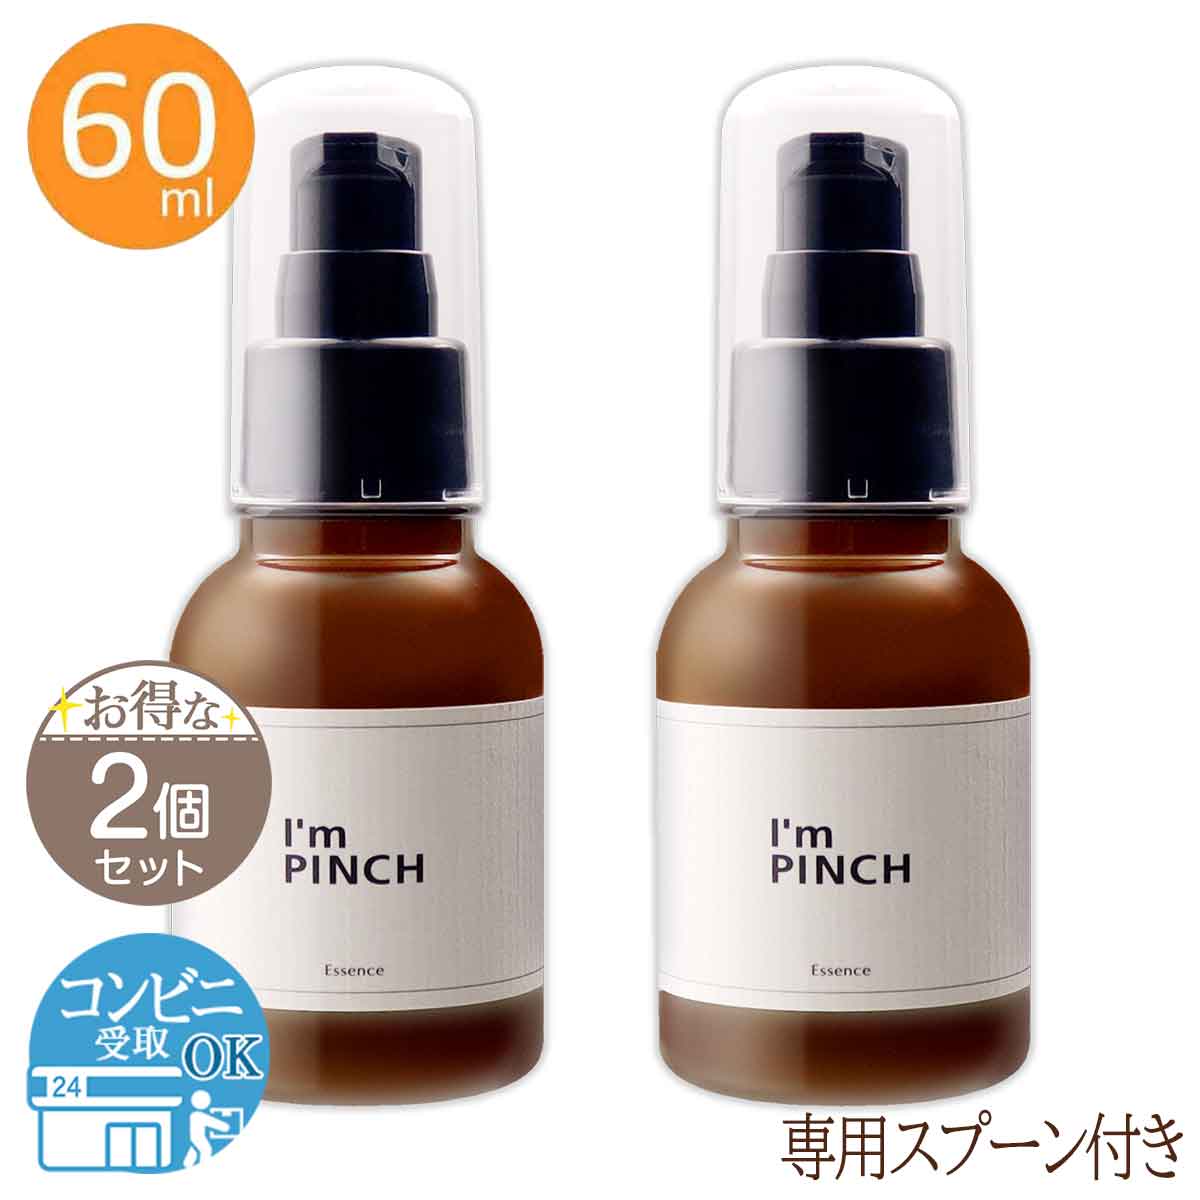 【 2個セット 】 アイムピンチ美容液  I'm PINCH 60ml 未来 アイムピンチ 美容液 スキンケア 配送料無料NYH / アイムピンチ60mlF04-L9 / PNCH60-02P